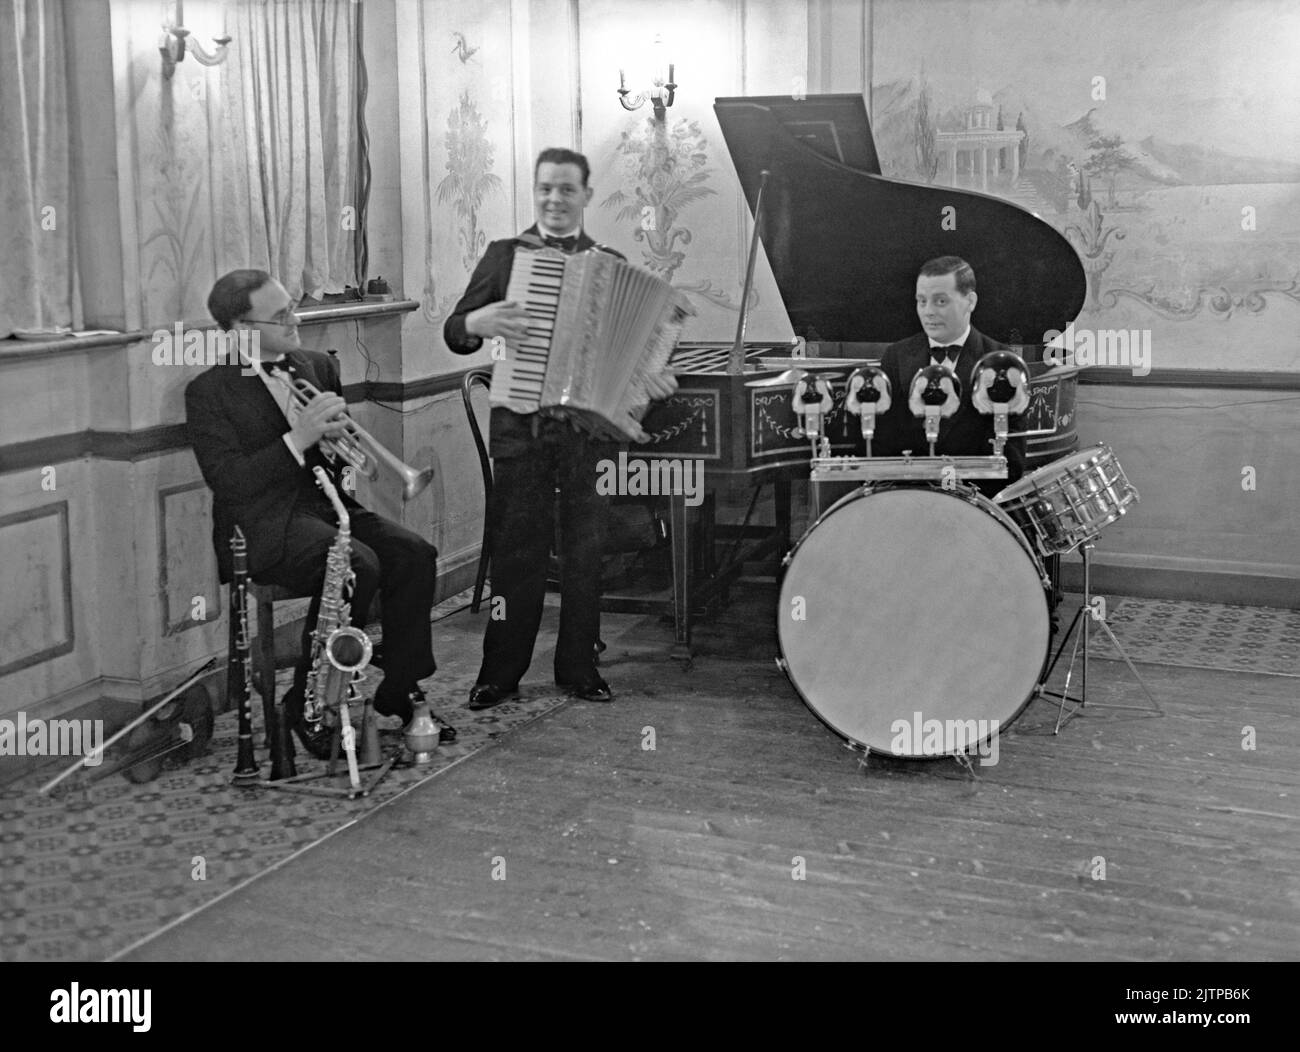 Eine britische Tanzband, das W Johnson Trio, im Januar 1938 in der Unity Hall, Brixton, London, Großbritannien. Frühe Tanz- und Swing-Bands hatten ihre Blütezeit in Großbritannien während der Jahre 1920s–30s. Bands spielten in Tanzsälen und Hotelballsälen. Sie spielten melodische, gute-Zeit-Musik und einzelne Spieler spielten in mehreren Bands. Dieses Bild stammt aus einem alten Glas-Negativ – einem Vintage-Foto aus dem Jahr 1930s. Stockfoto